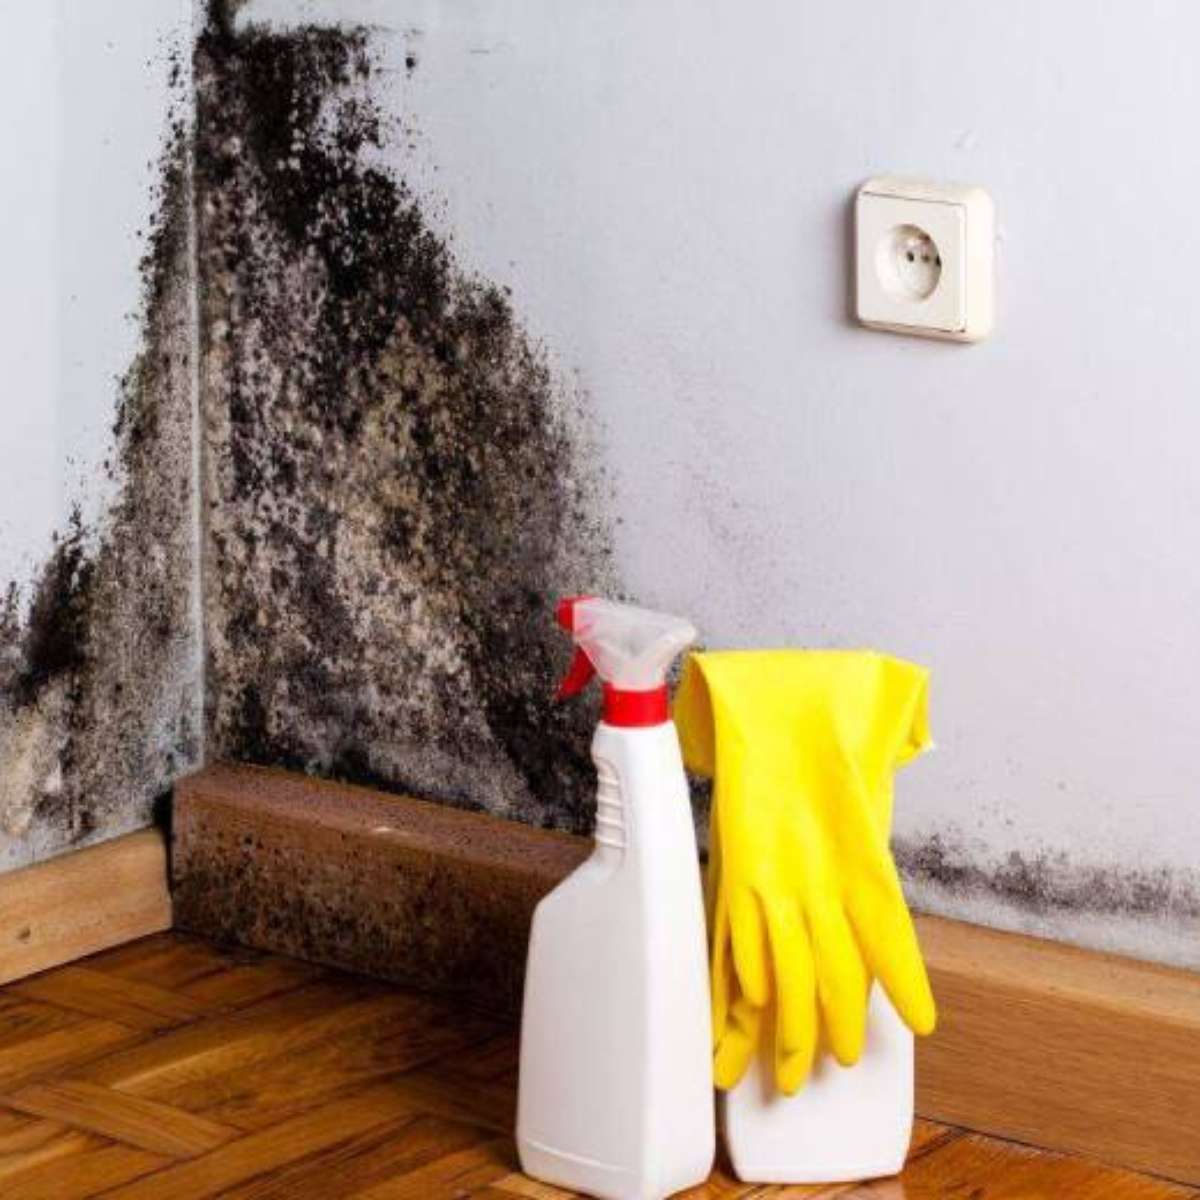 दीवार से मोल्ड कैसे हटाएं: साधारण सफाई से लेकर नवीनीकरण तक